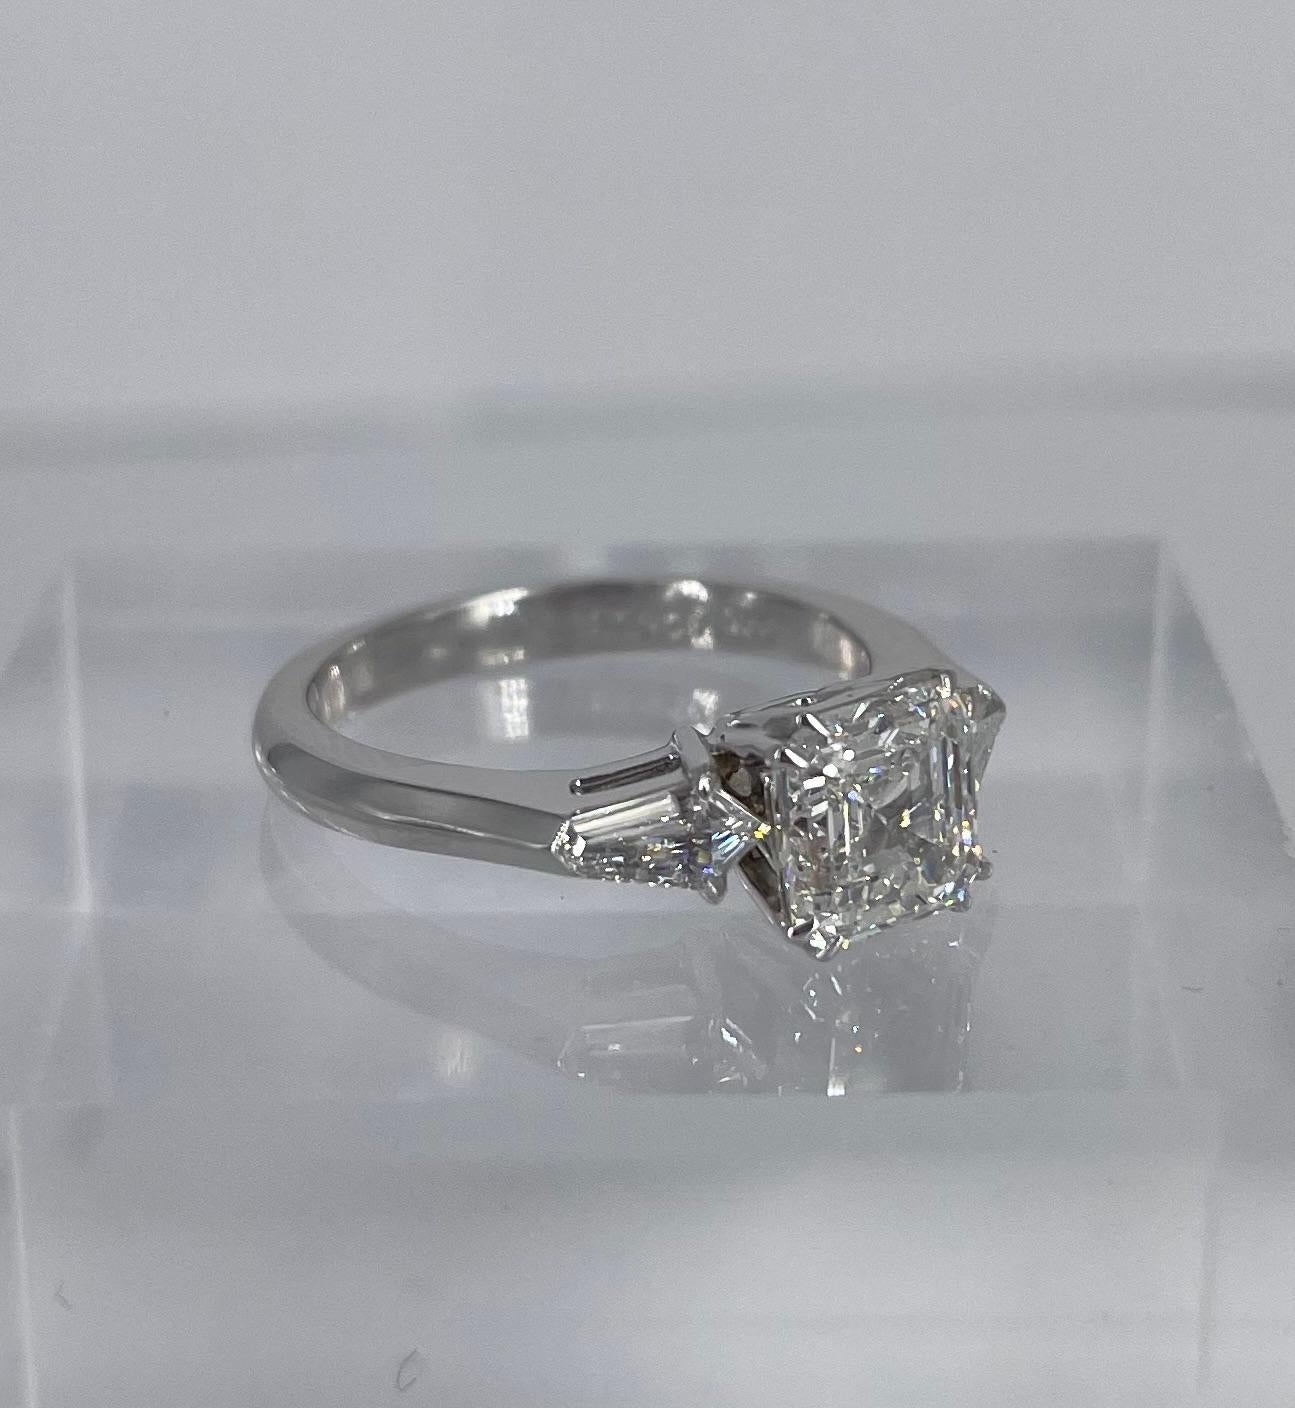 1.5 carat asscher cut diamond ring